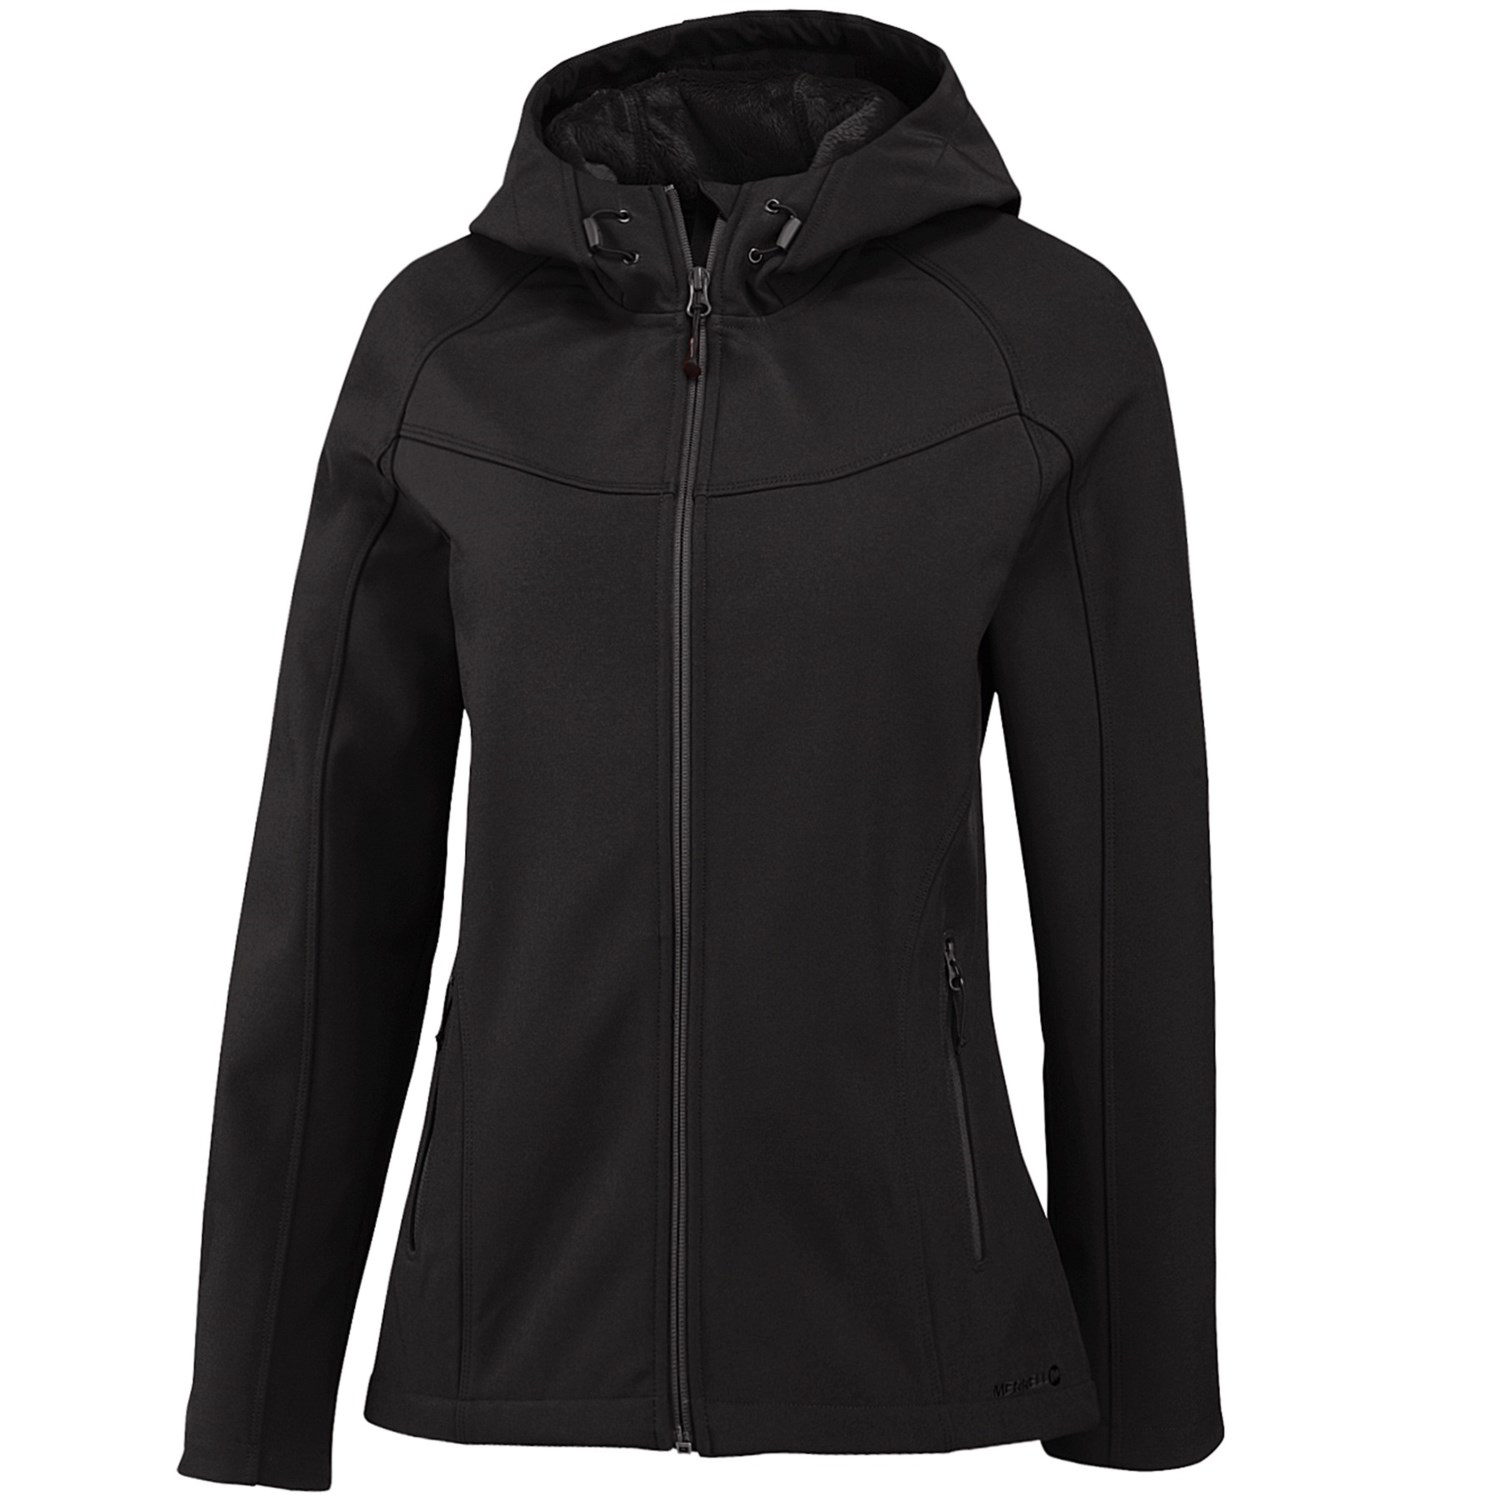 Merrell Layne Soft Shell Jacket - Hooded (For Women) in Black